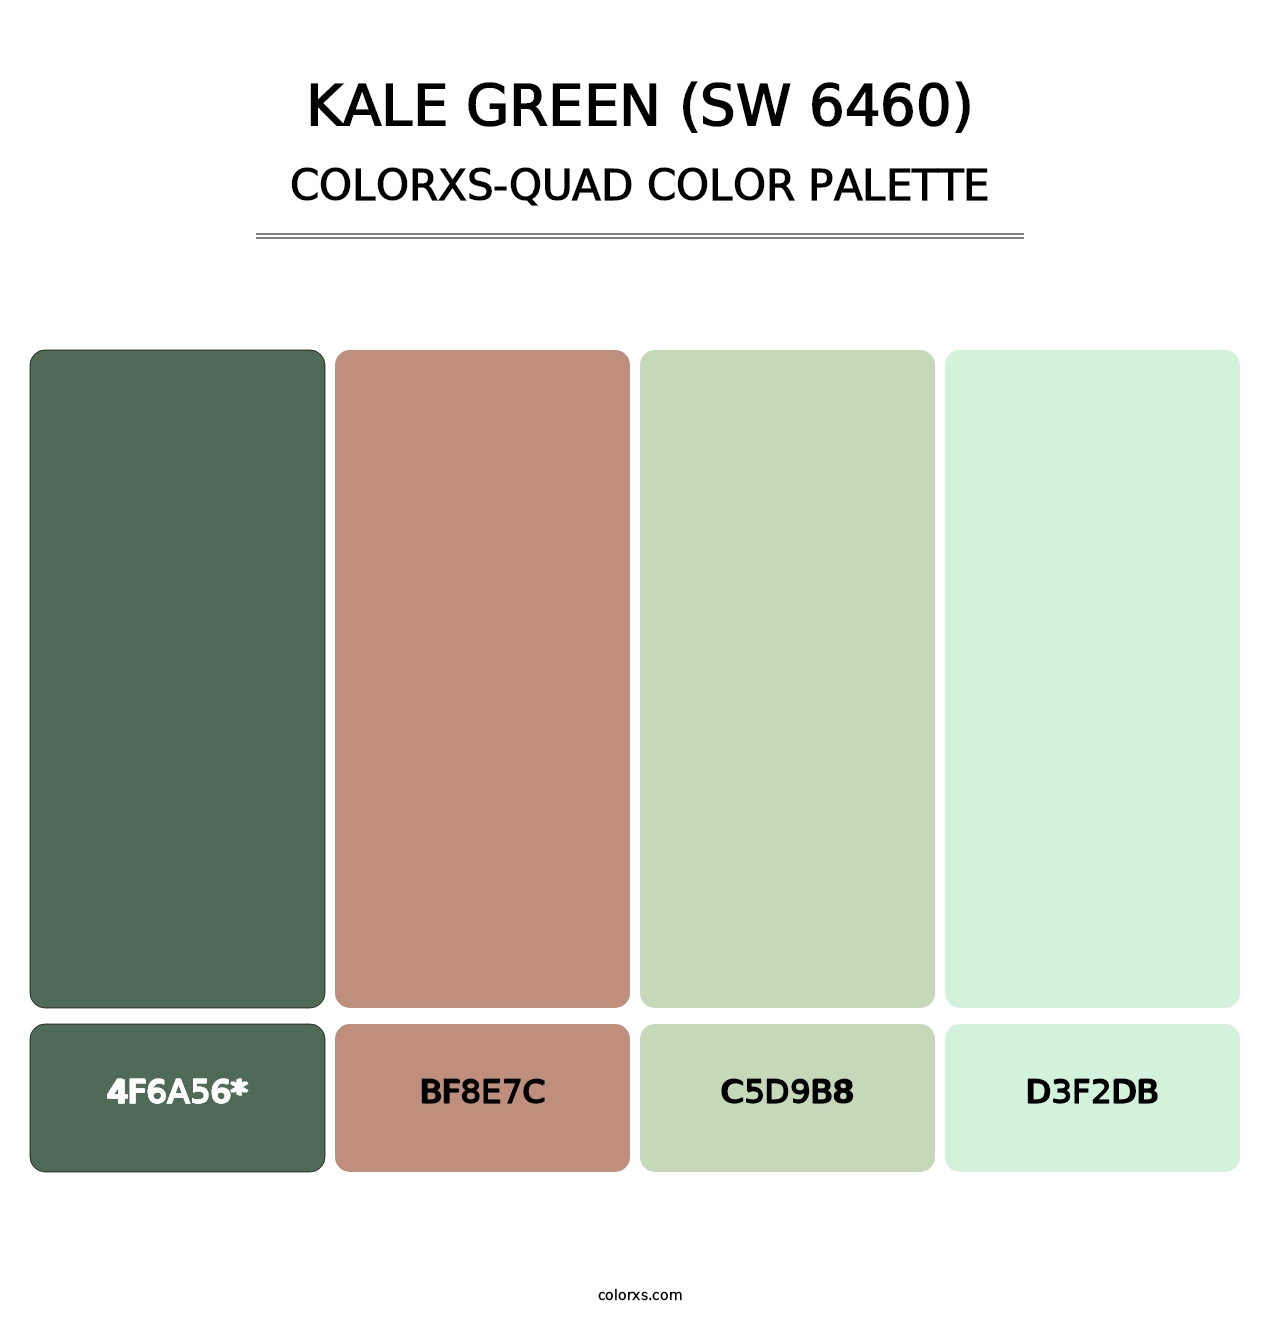 Kale Green (SW 6460) - Colorxs Quad Palette